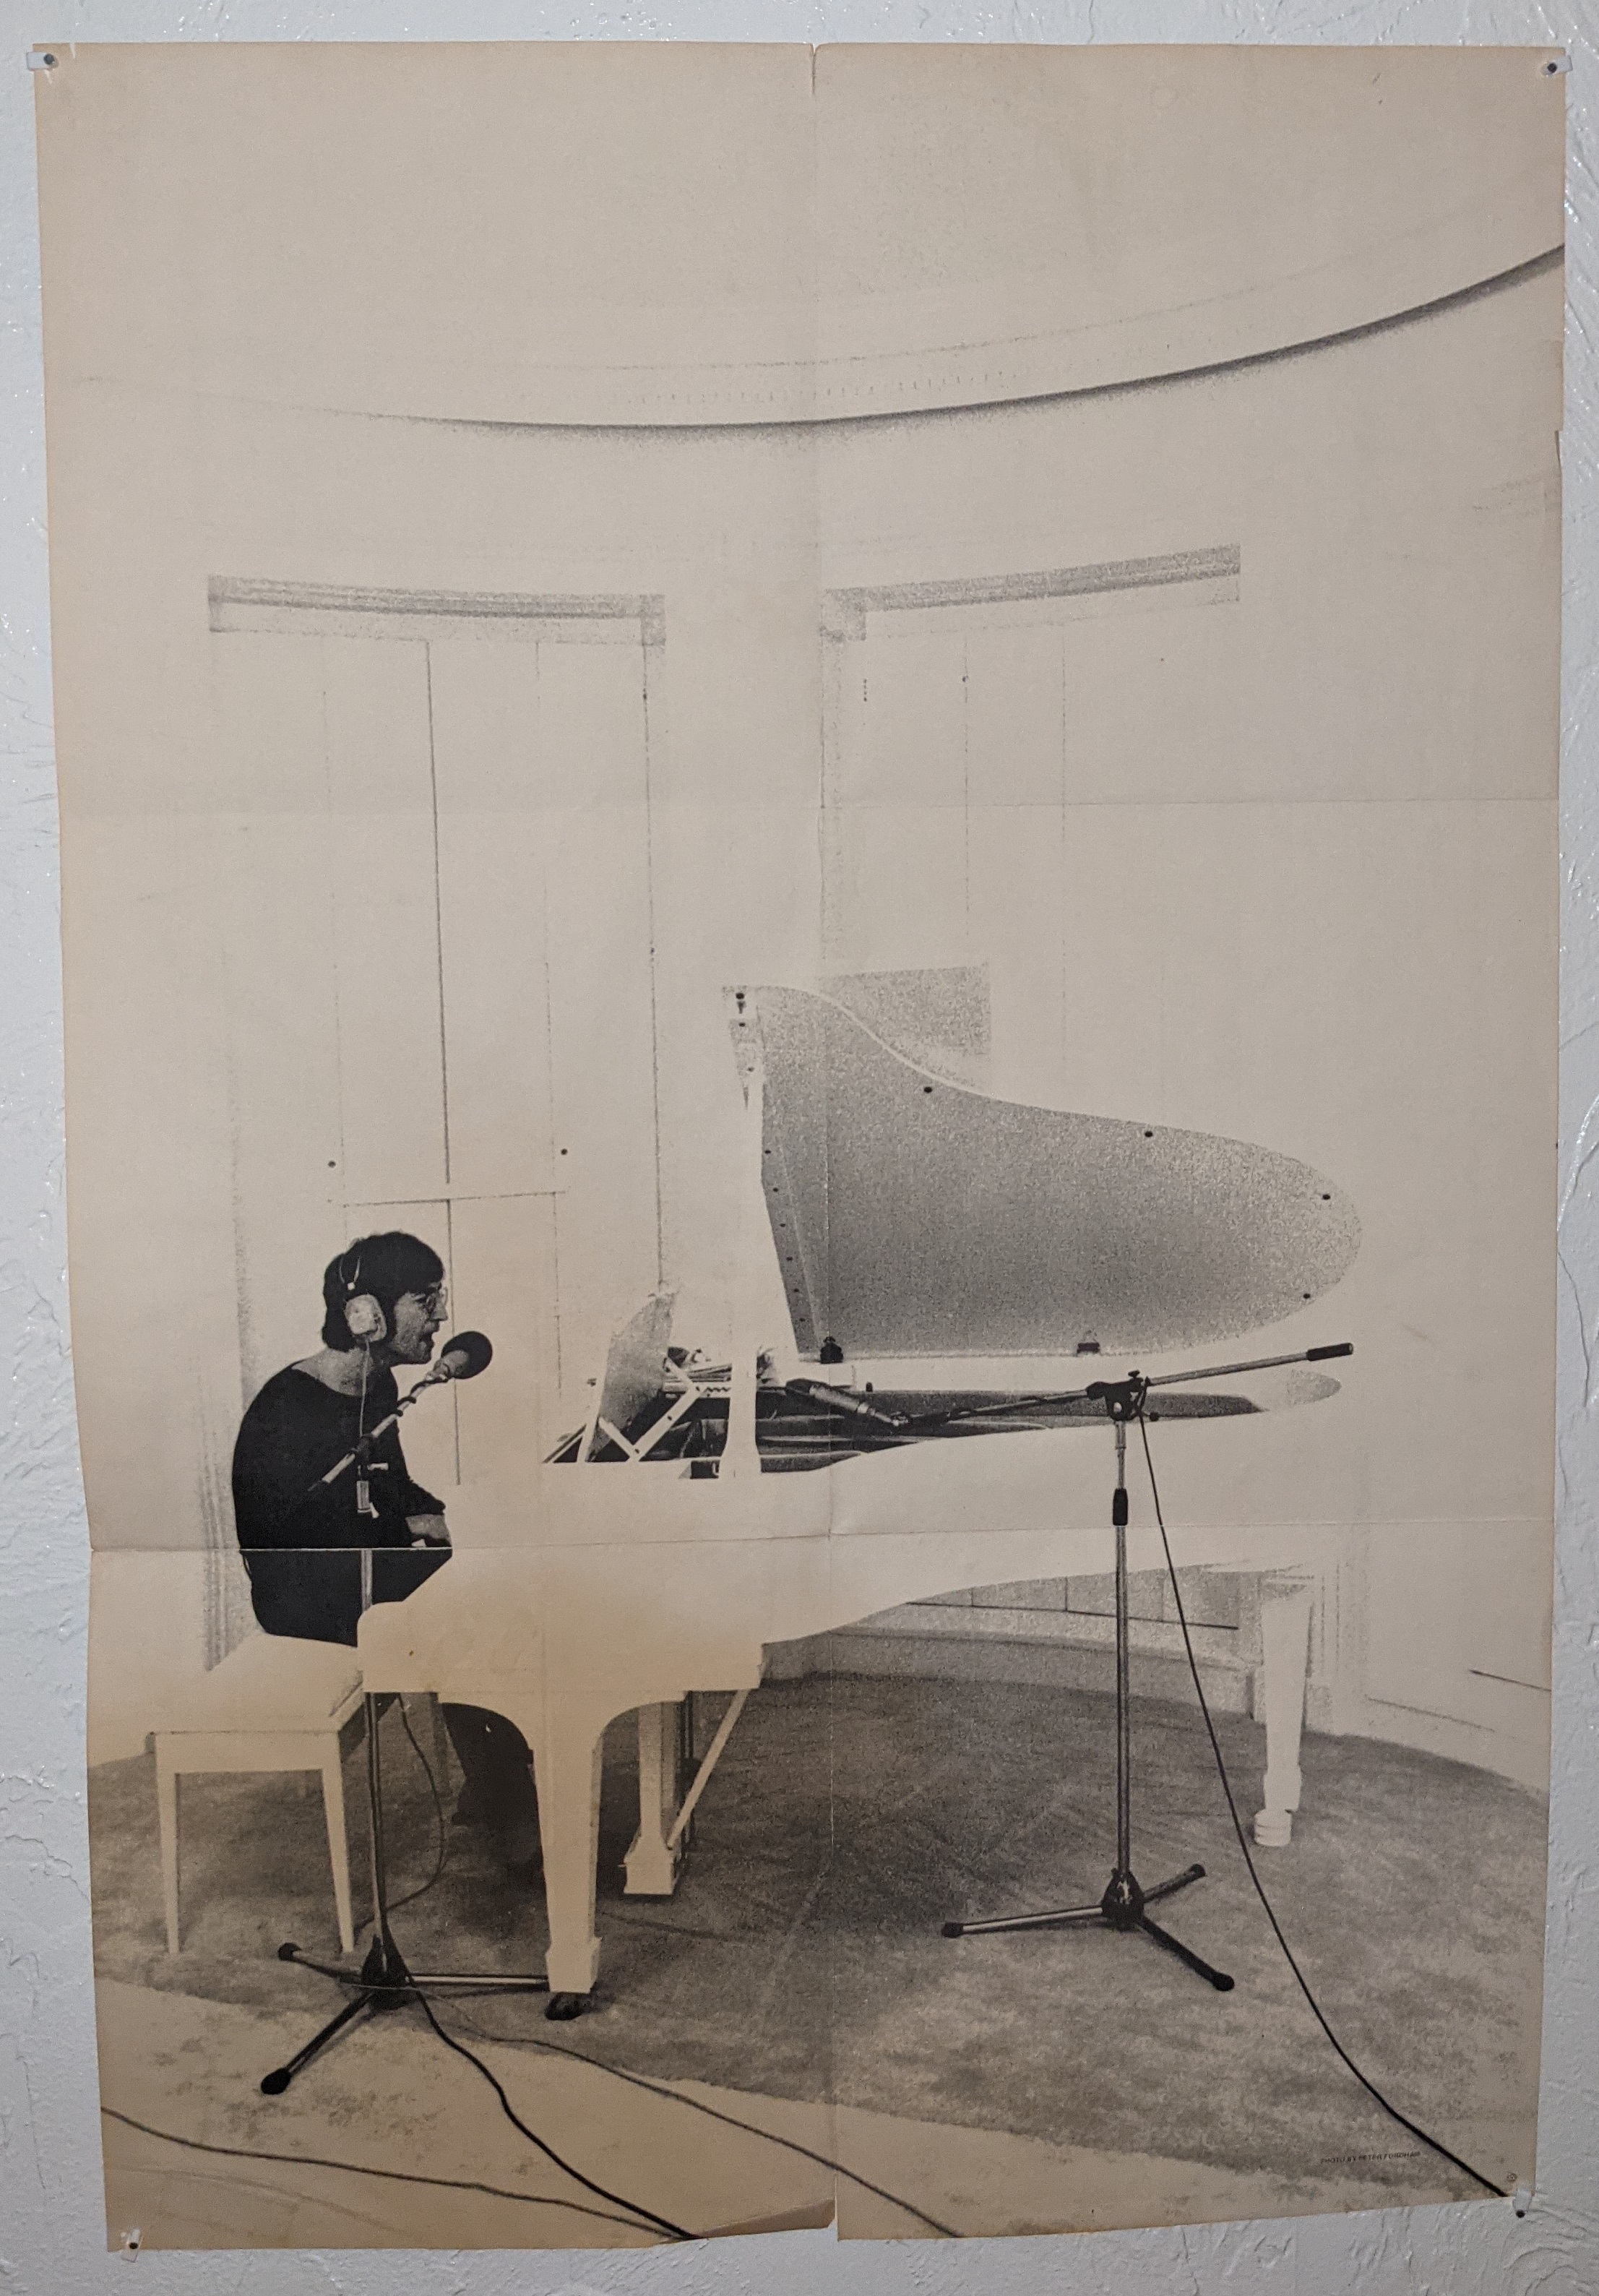 John Lennon on Piano